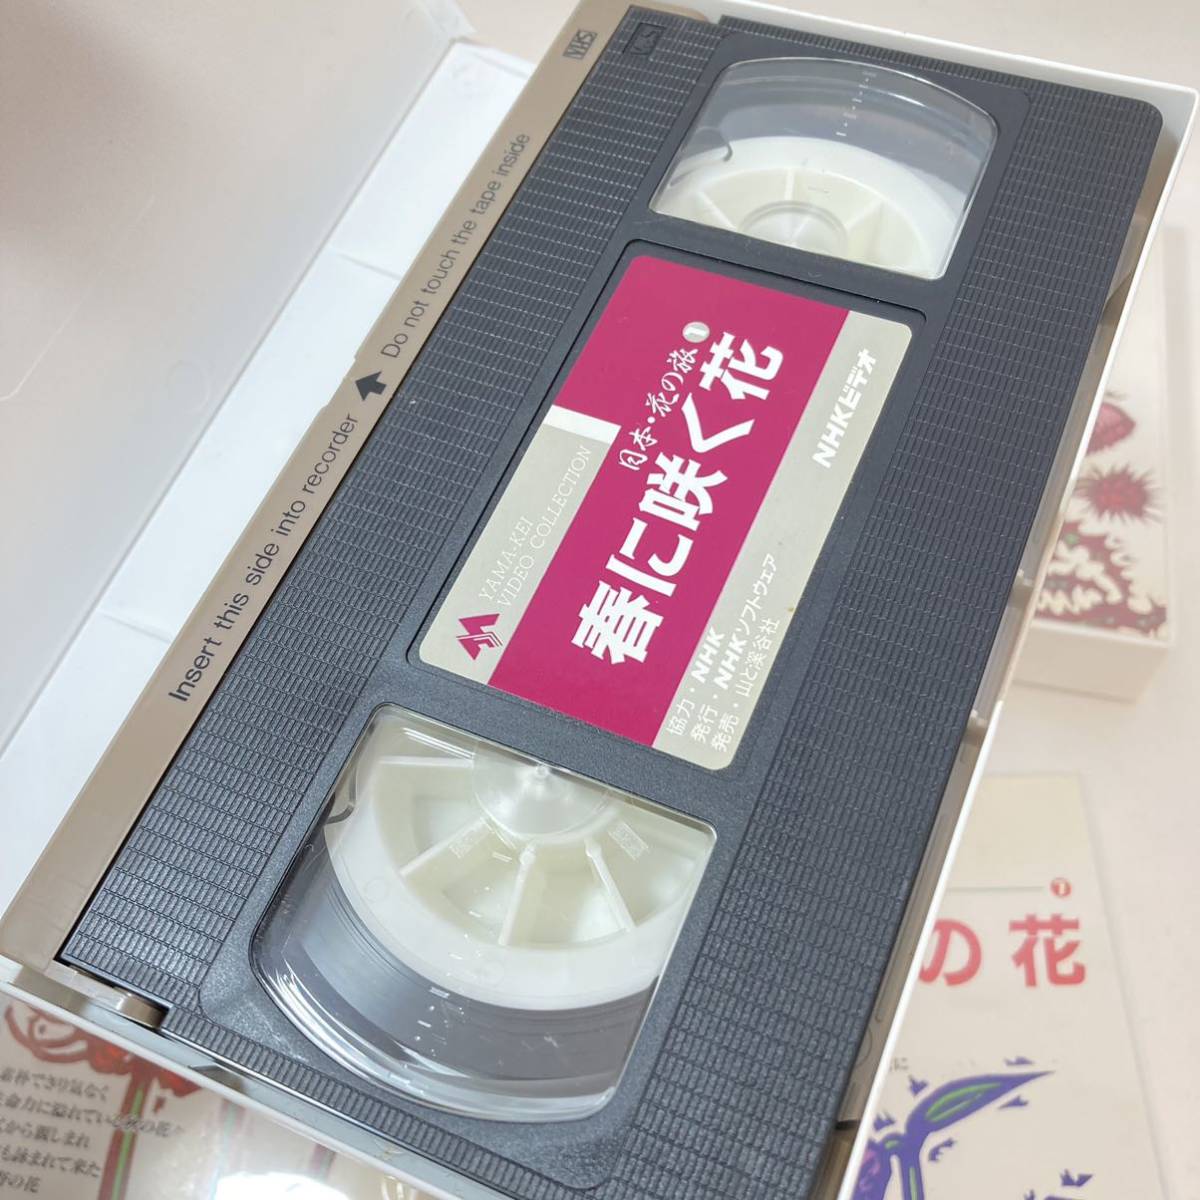 NHK видео Япония цветок. .VHS 1~8 шт итого 8шт.@ гора ... фирма видеолента комплект суммировать retro 3003